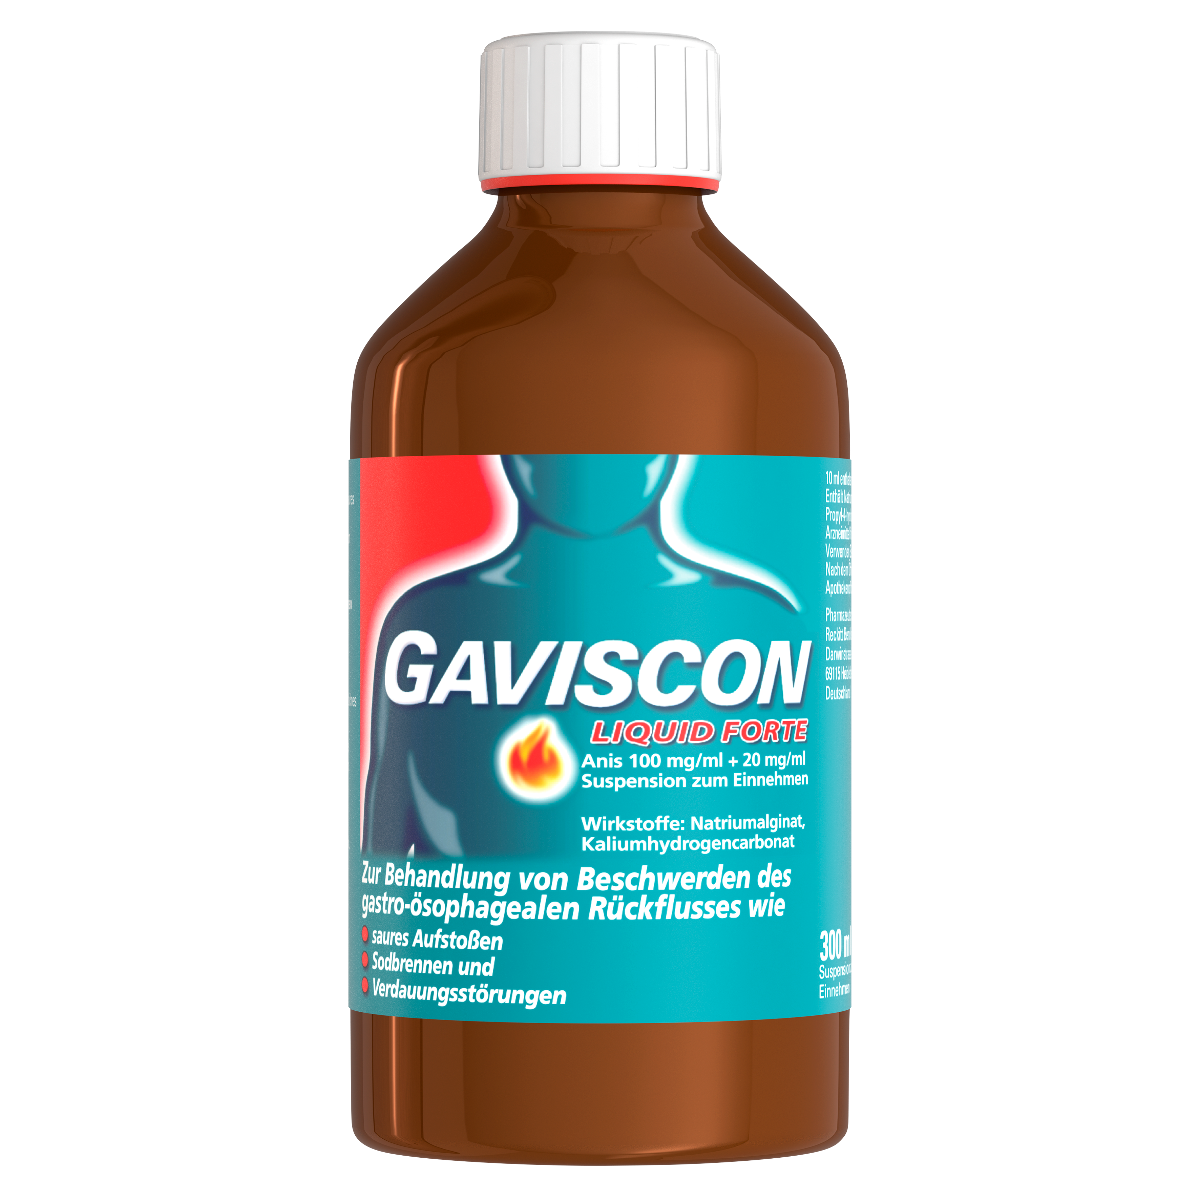 Abbildung Gaviscon Liquid forte Anis 100 mg/ml + 20 mg/ml Suspension zum Einnehmen